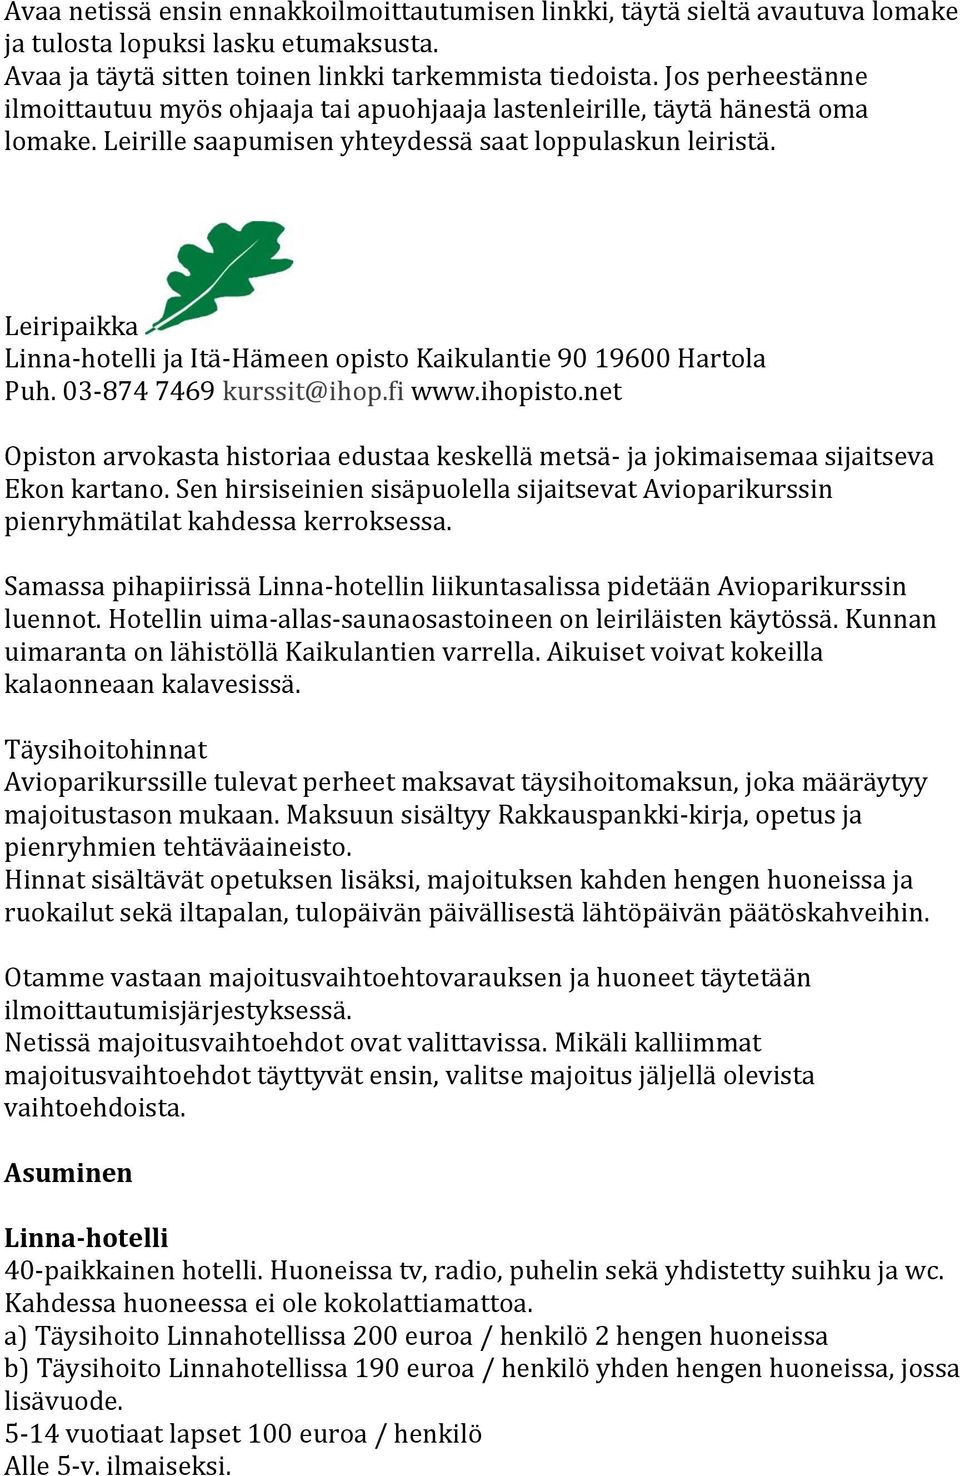 Leiripaikka Linna-hotelli ja Itä-Hämeen opisto Kaikulantie 90 19600 Hartola Puh. 03-874 7469 kurssit@ihop.fi www.ihopisto.